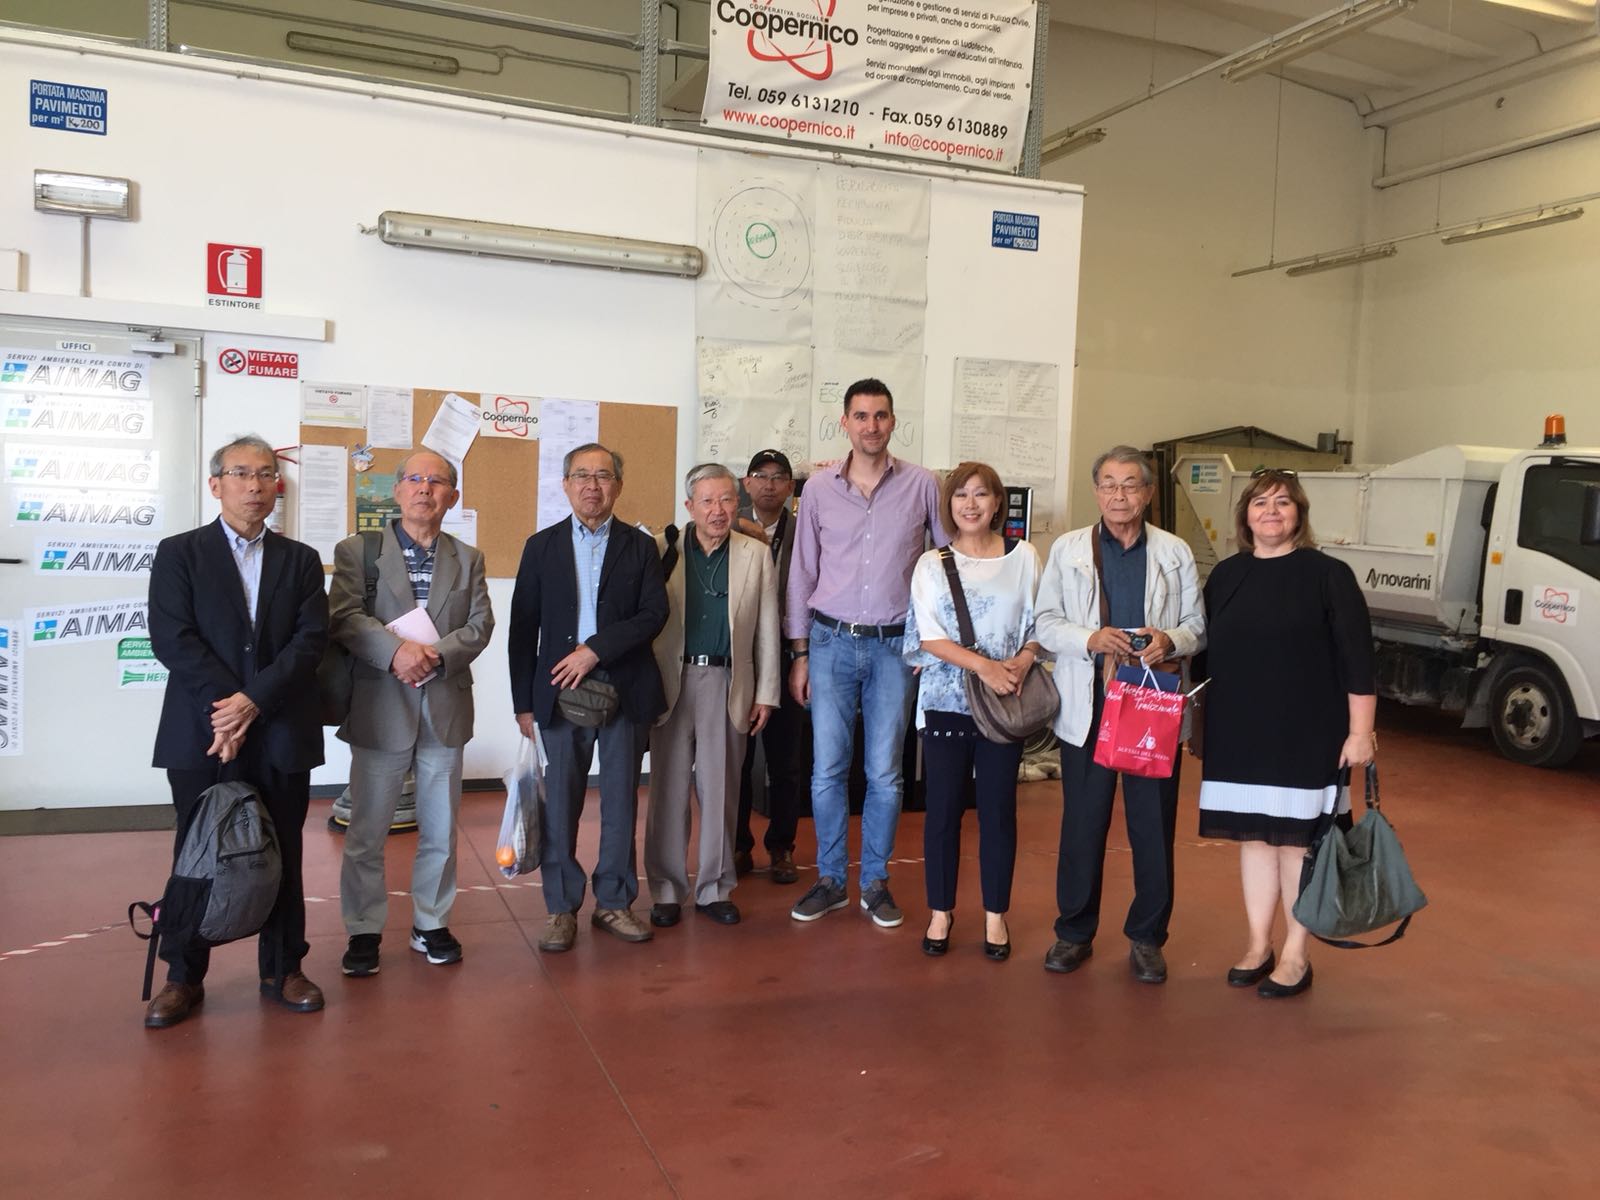 Dal Giappone a Modena per studiare la cooperazione sociale. Una delegazione di professori universitari in visita alle cooperative Gulliver e Coopernico